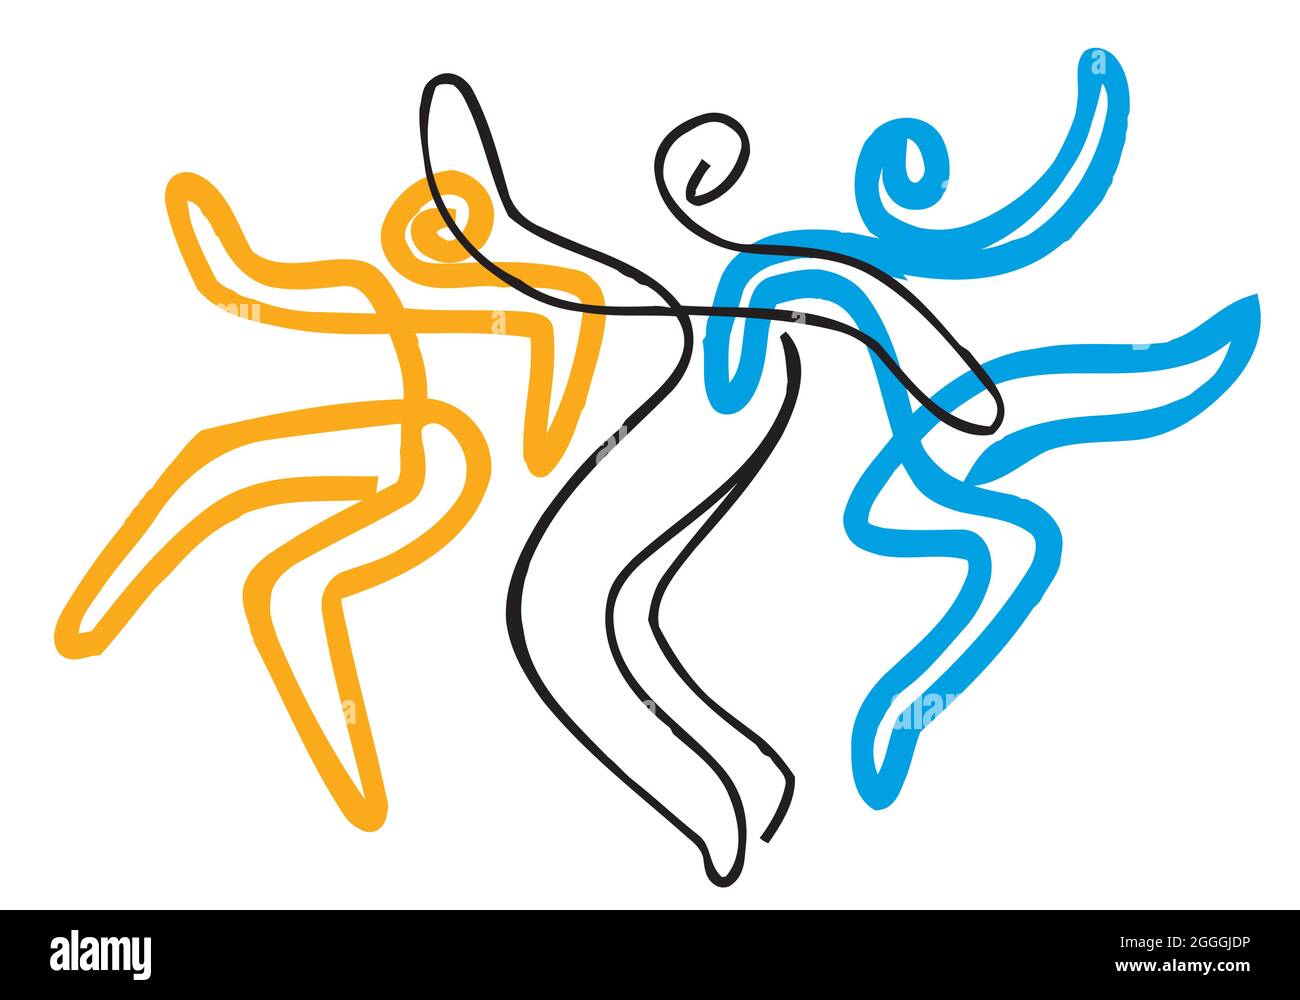 Lebendige tanzende Menschen, Volkstanz Symbol. Ausdrucksstarke, Linienkunst stilisierte Illustrationen von Tänzern.isoliert auf weißem Hintergrund. Vektor verfügbar. Stock Vektor